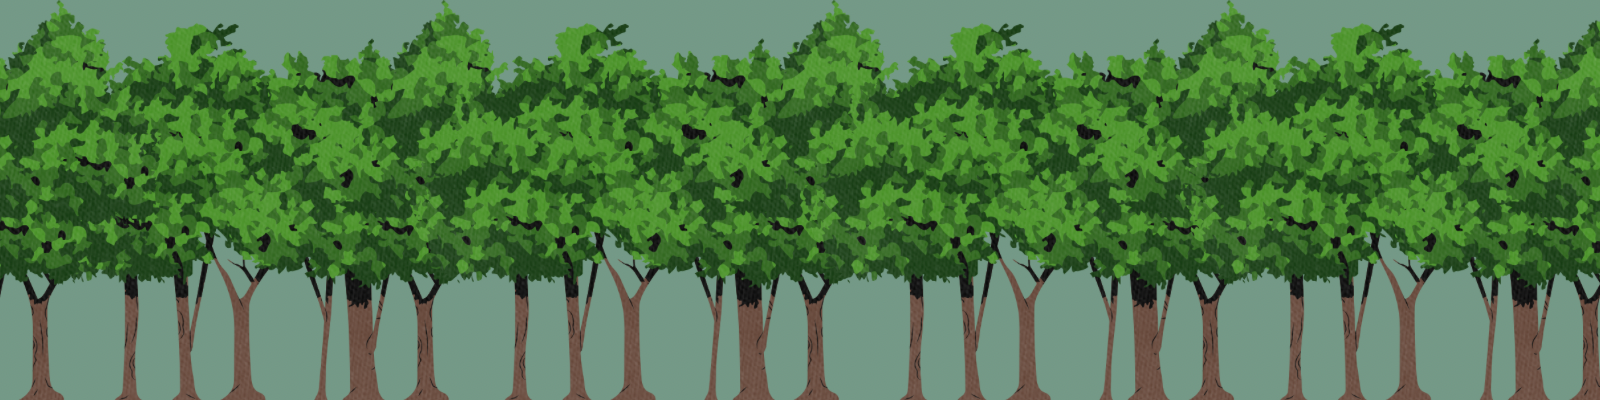 alberi verdi